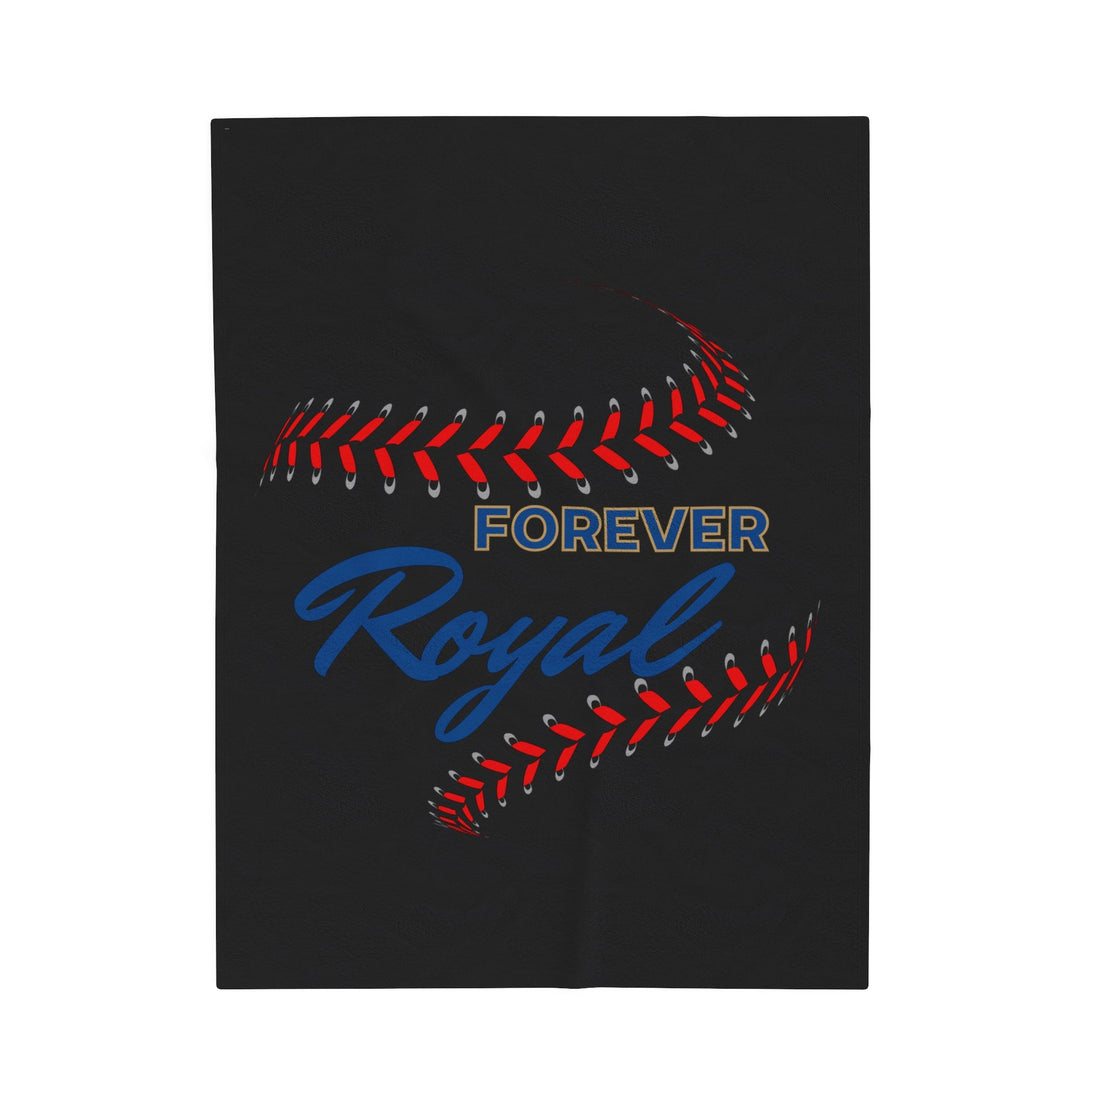 Forever Royal Velveteen Plush Blanket - All Over Prints - Positively Sassy - Forever Royal Velveteen Plush Blanket